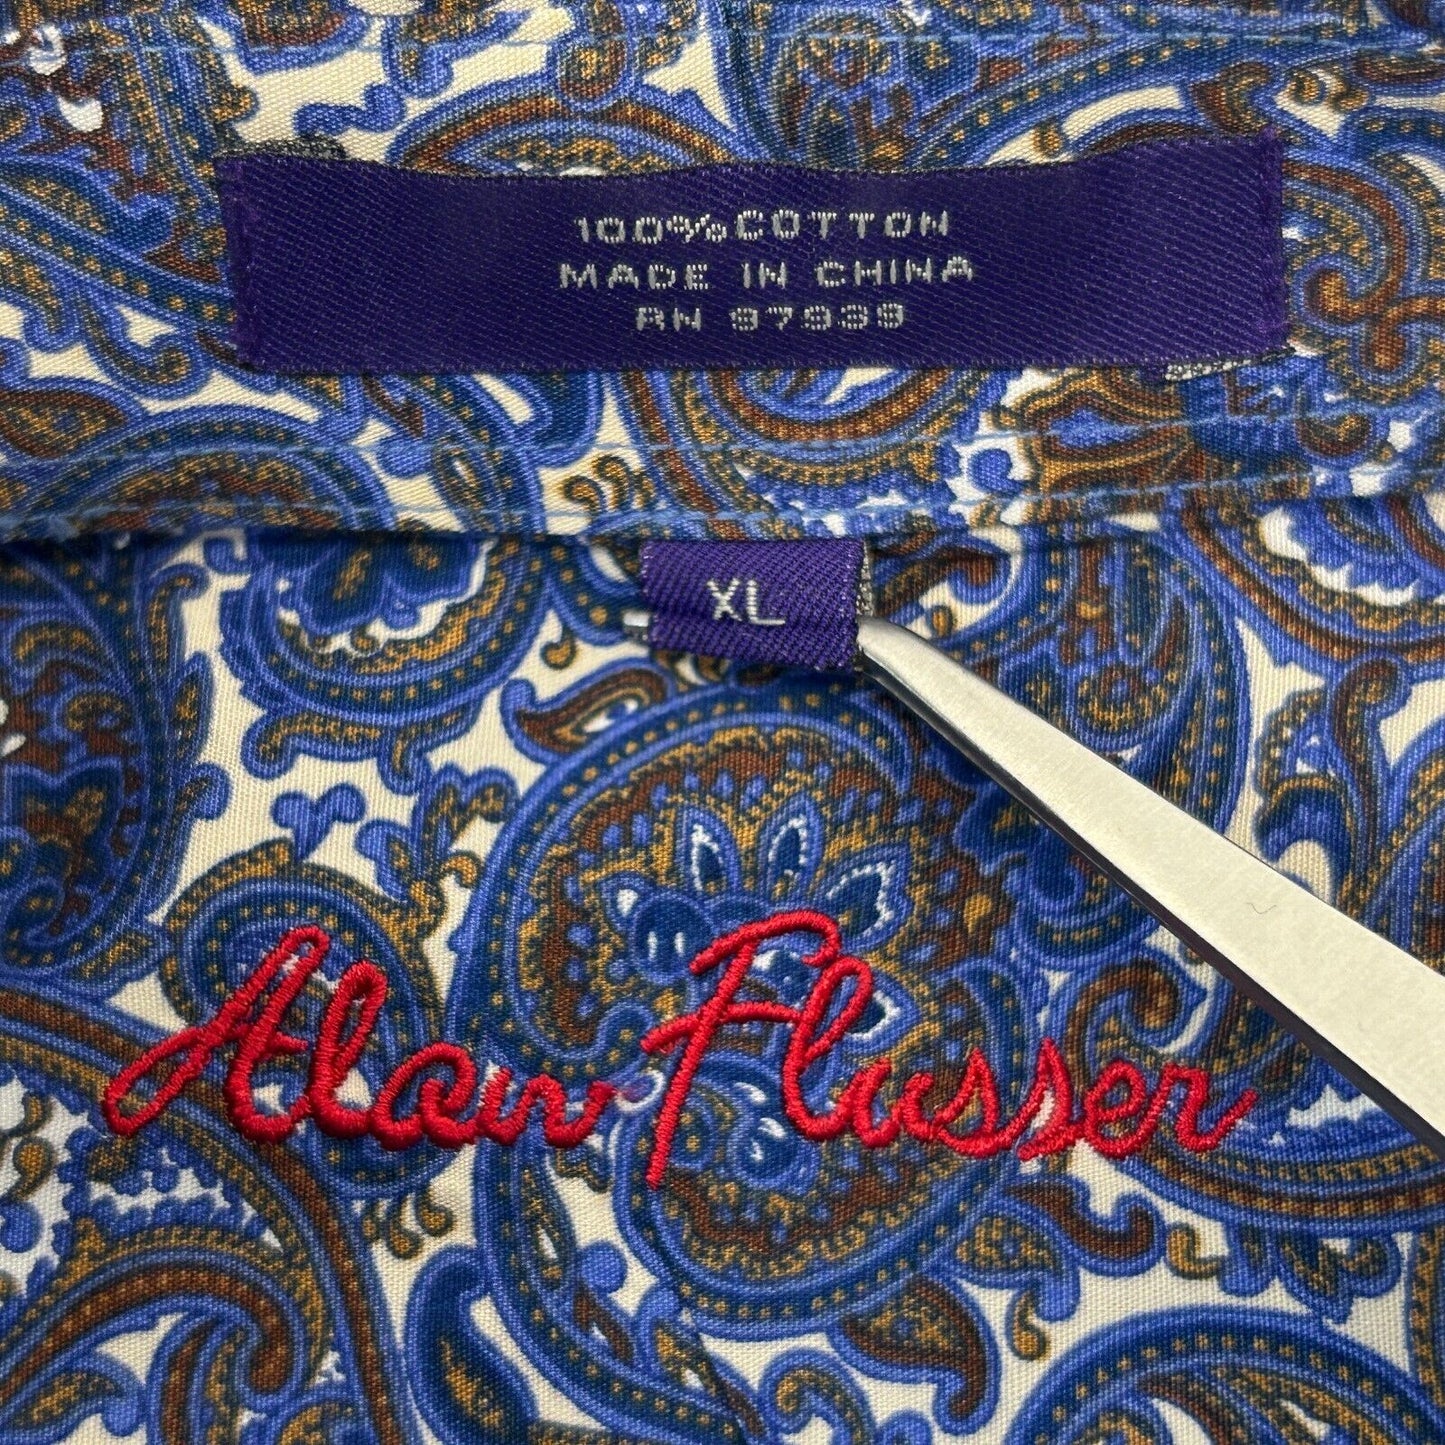 Alan Flusser Paisley Button Front Shirt Blue Long Sleeve Blue White Gold XL